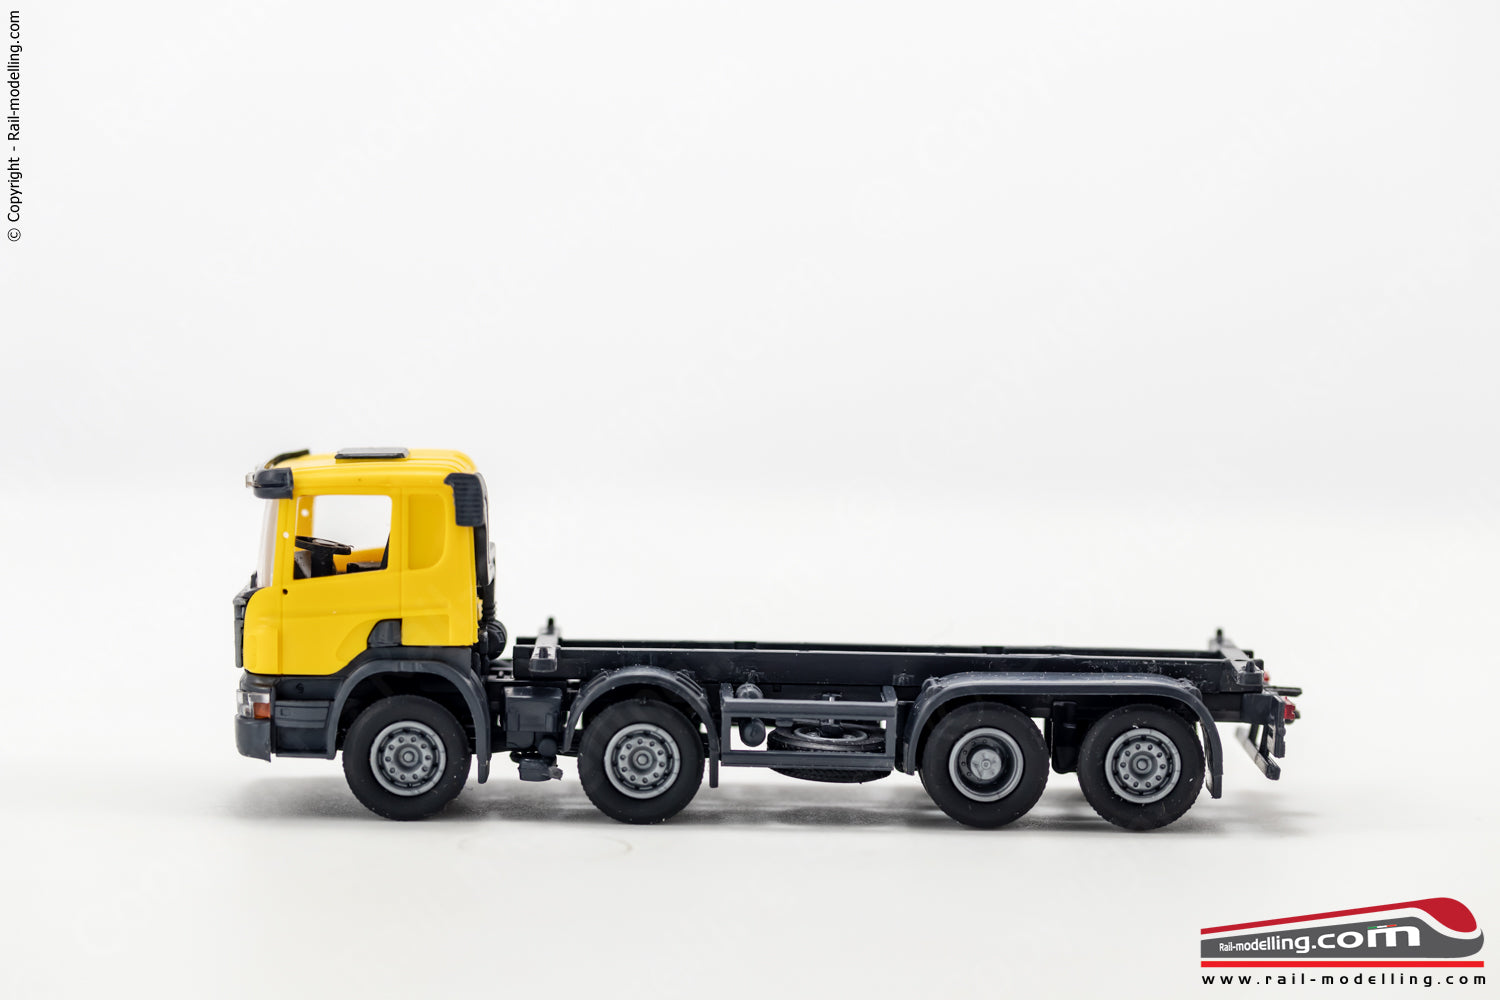 OLM 008 - H0 1:87 - Camion Scania 8x2 porta container 20'' cabina gialla pianale nero